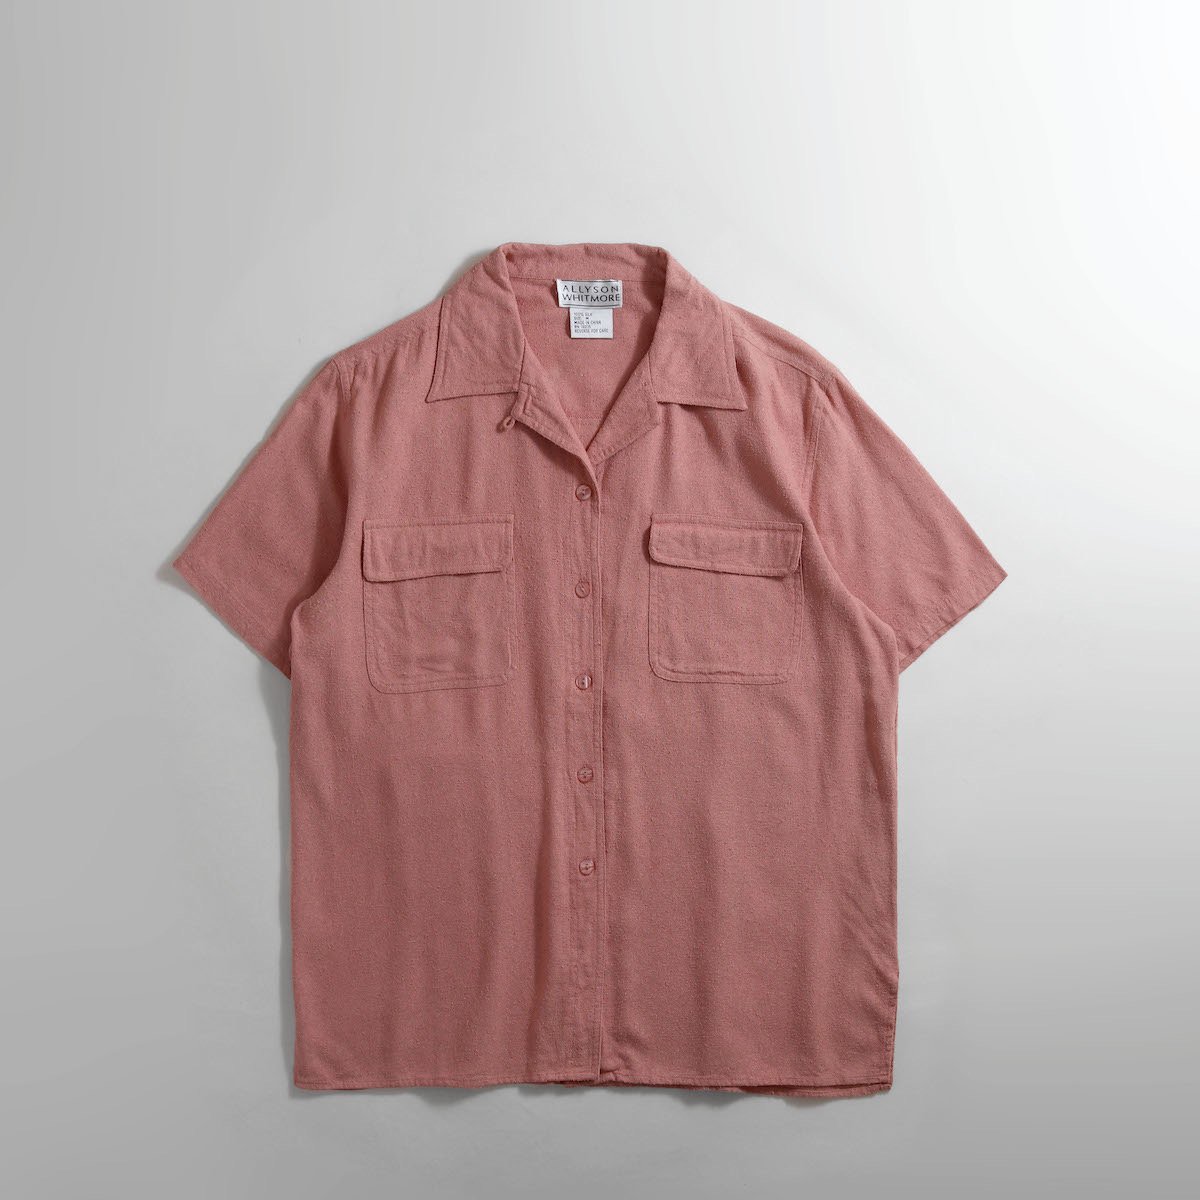 20%OFF [レディース] 1990s~ シルク オープンカラーシャツ 半袖 ピンク